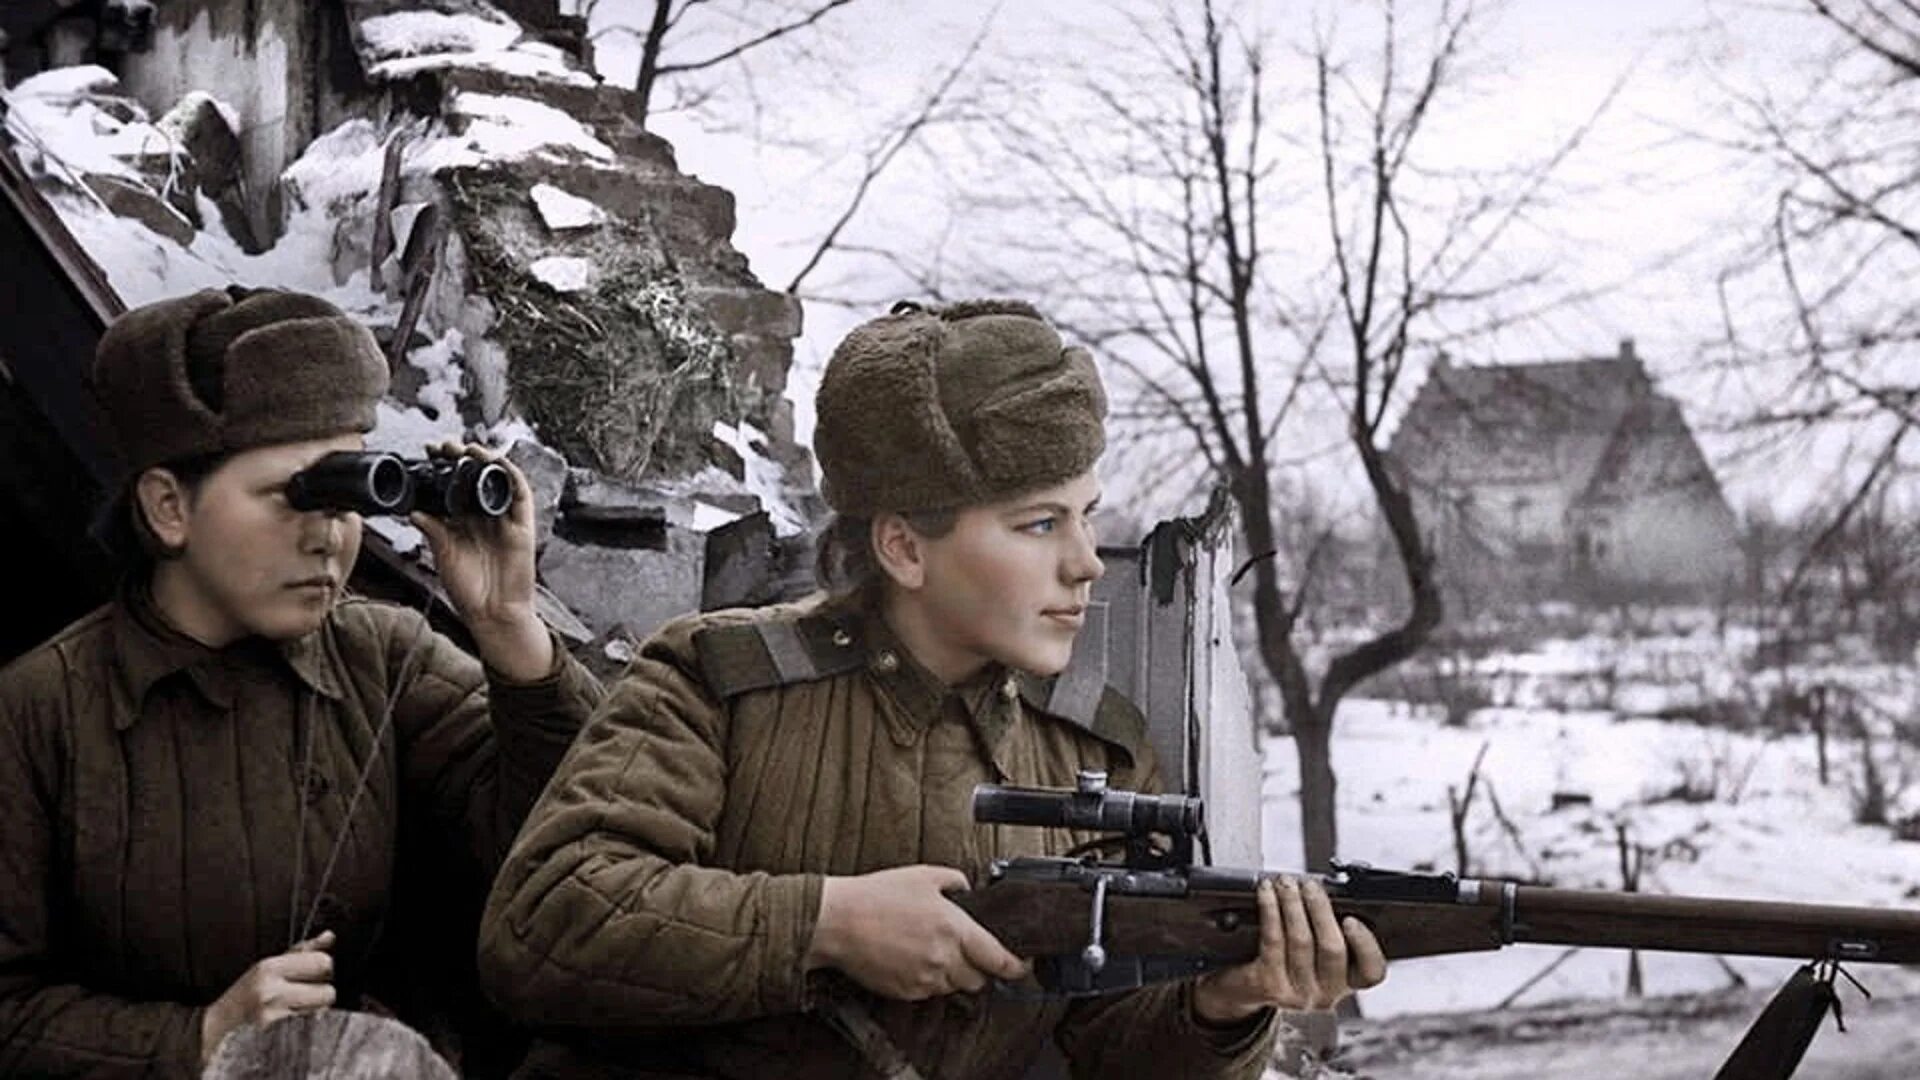 Женщины Снайперы Великой Отечественной войны 1941-1945. Снайперы женщины ВОВ 1941-1945. Снайперы ВОВ 1941-1945 СССР.